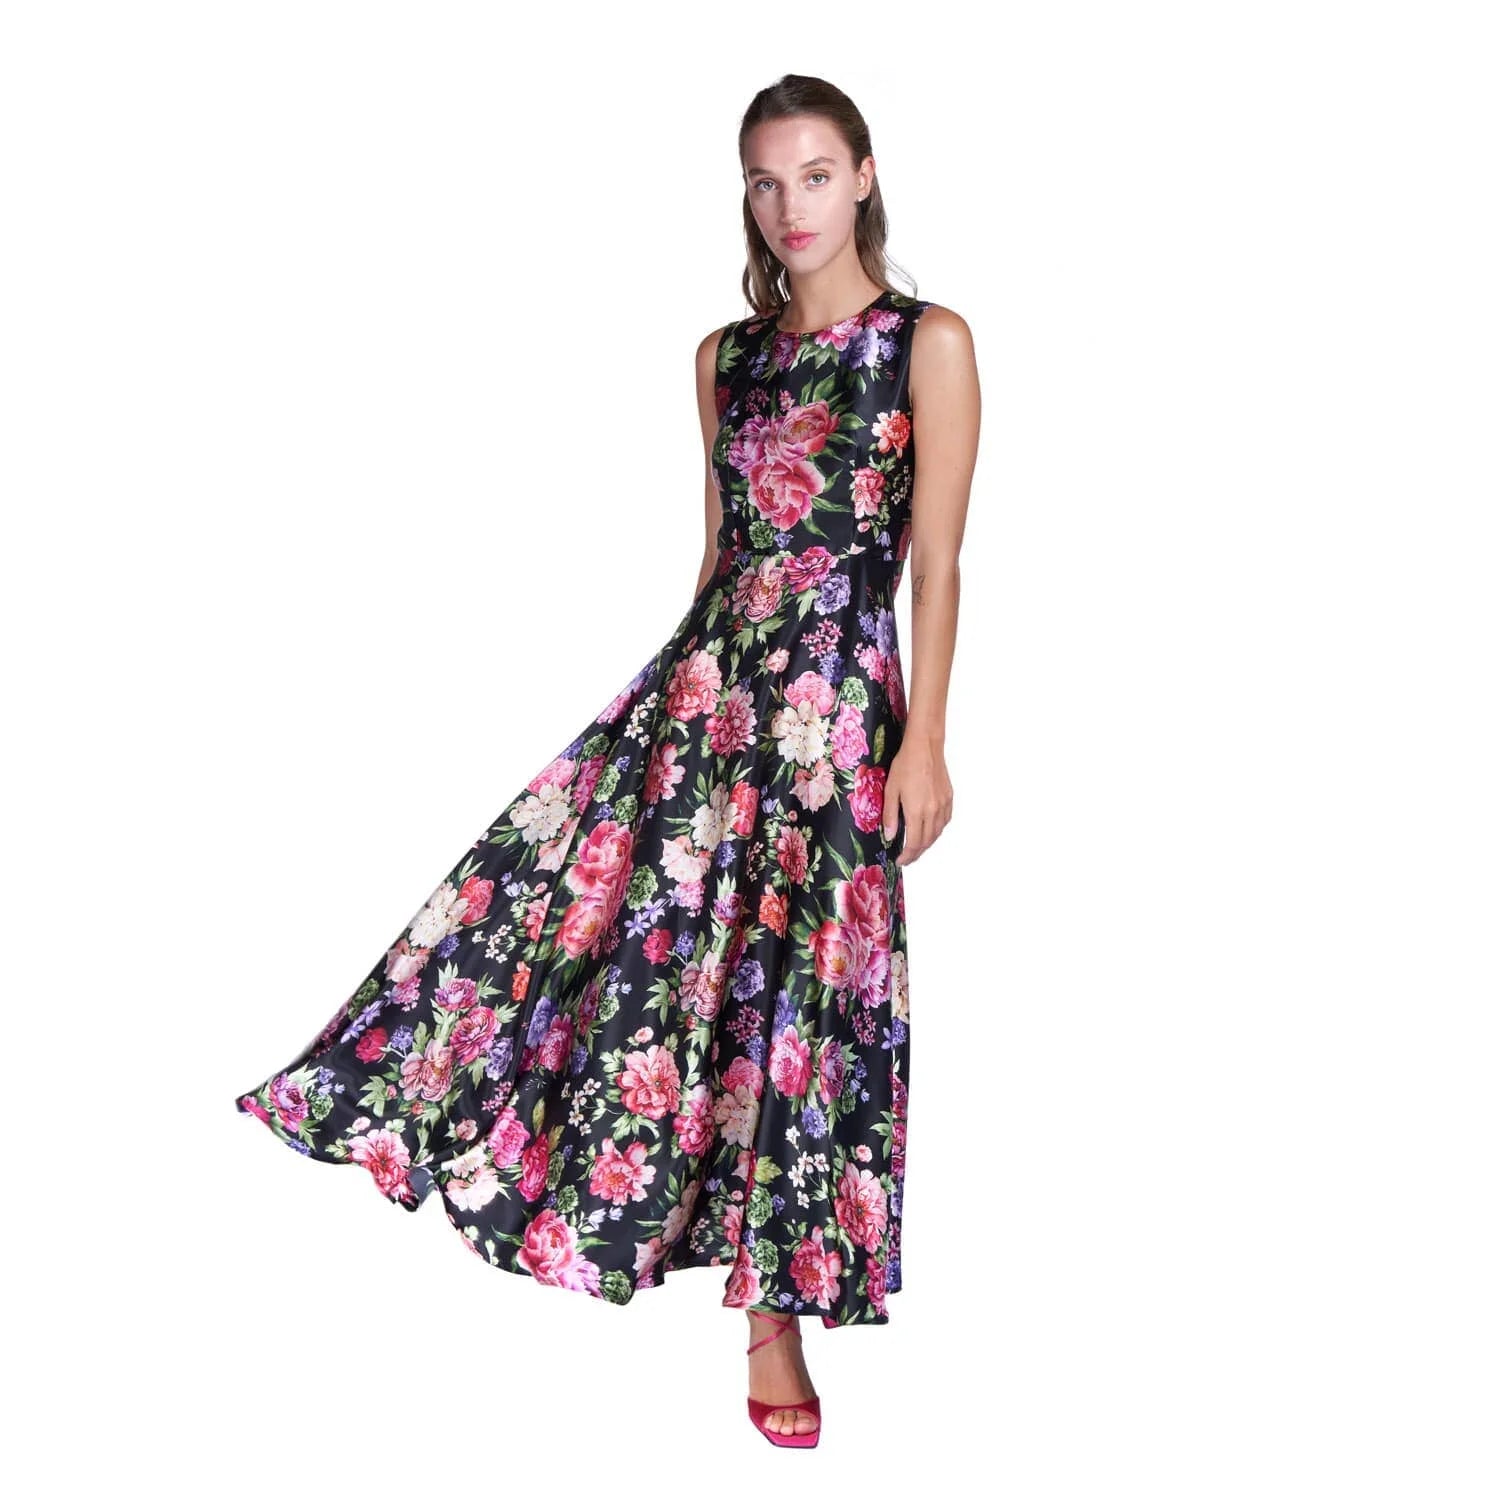 Floral print evening dress - Dress